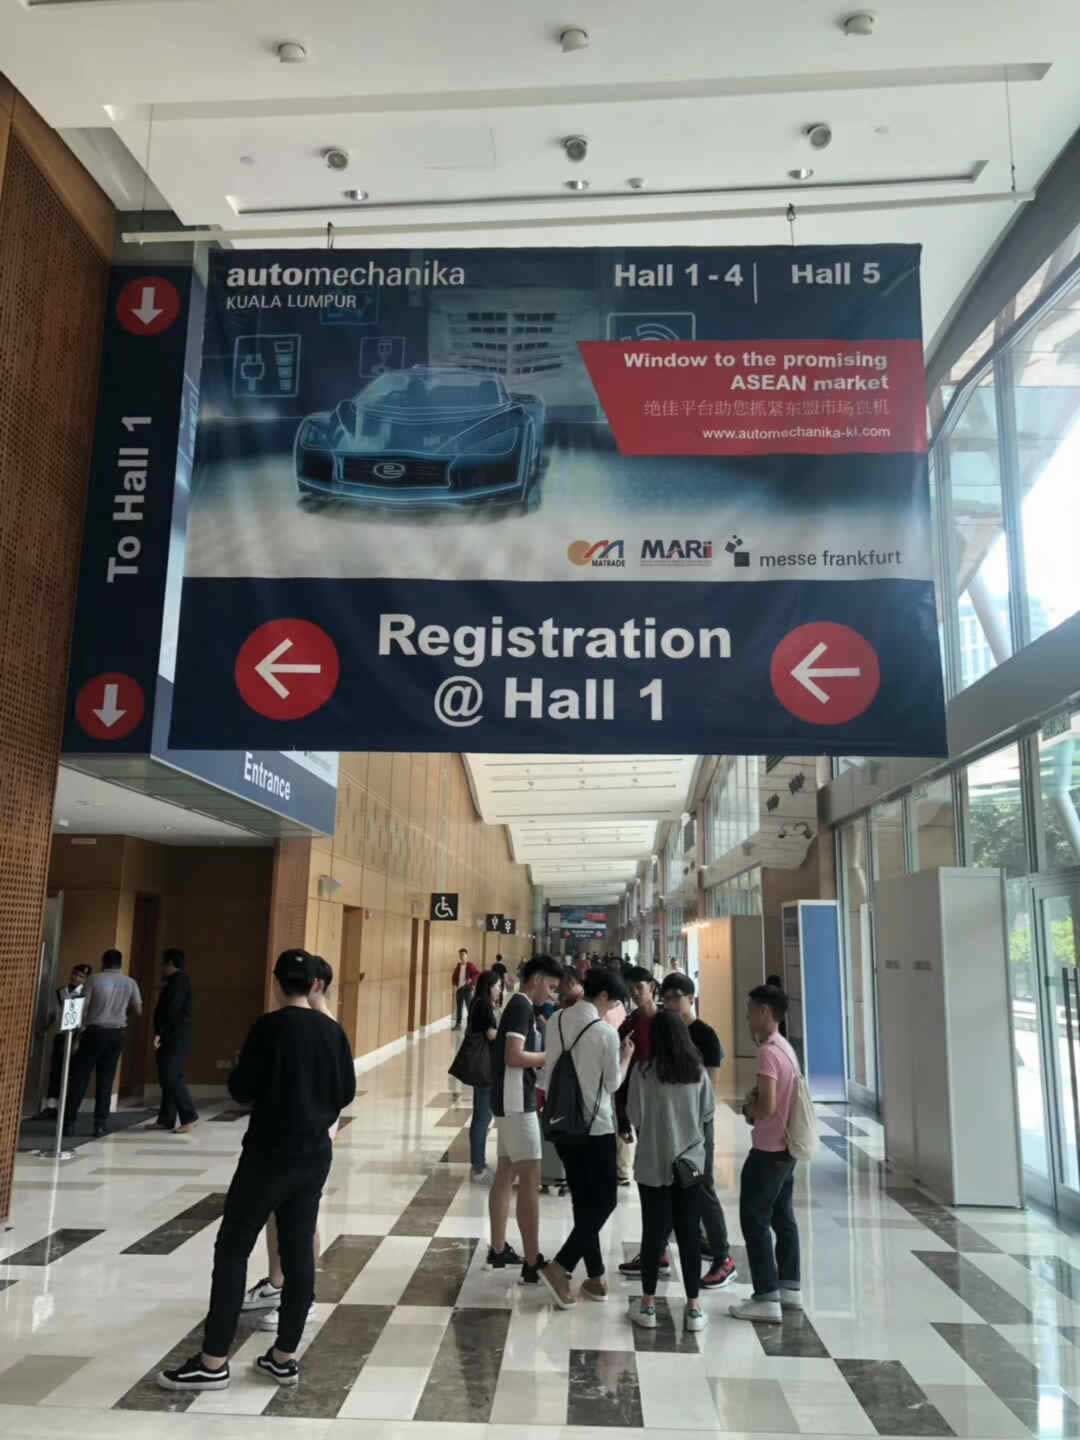 Automechanika Kuala Lumpur 2017